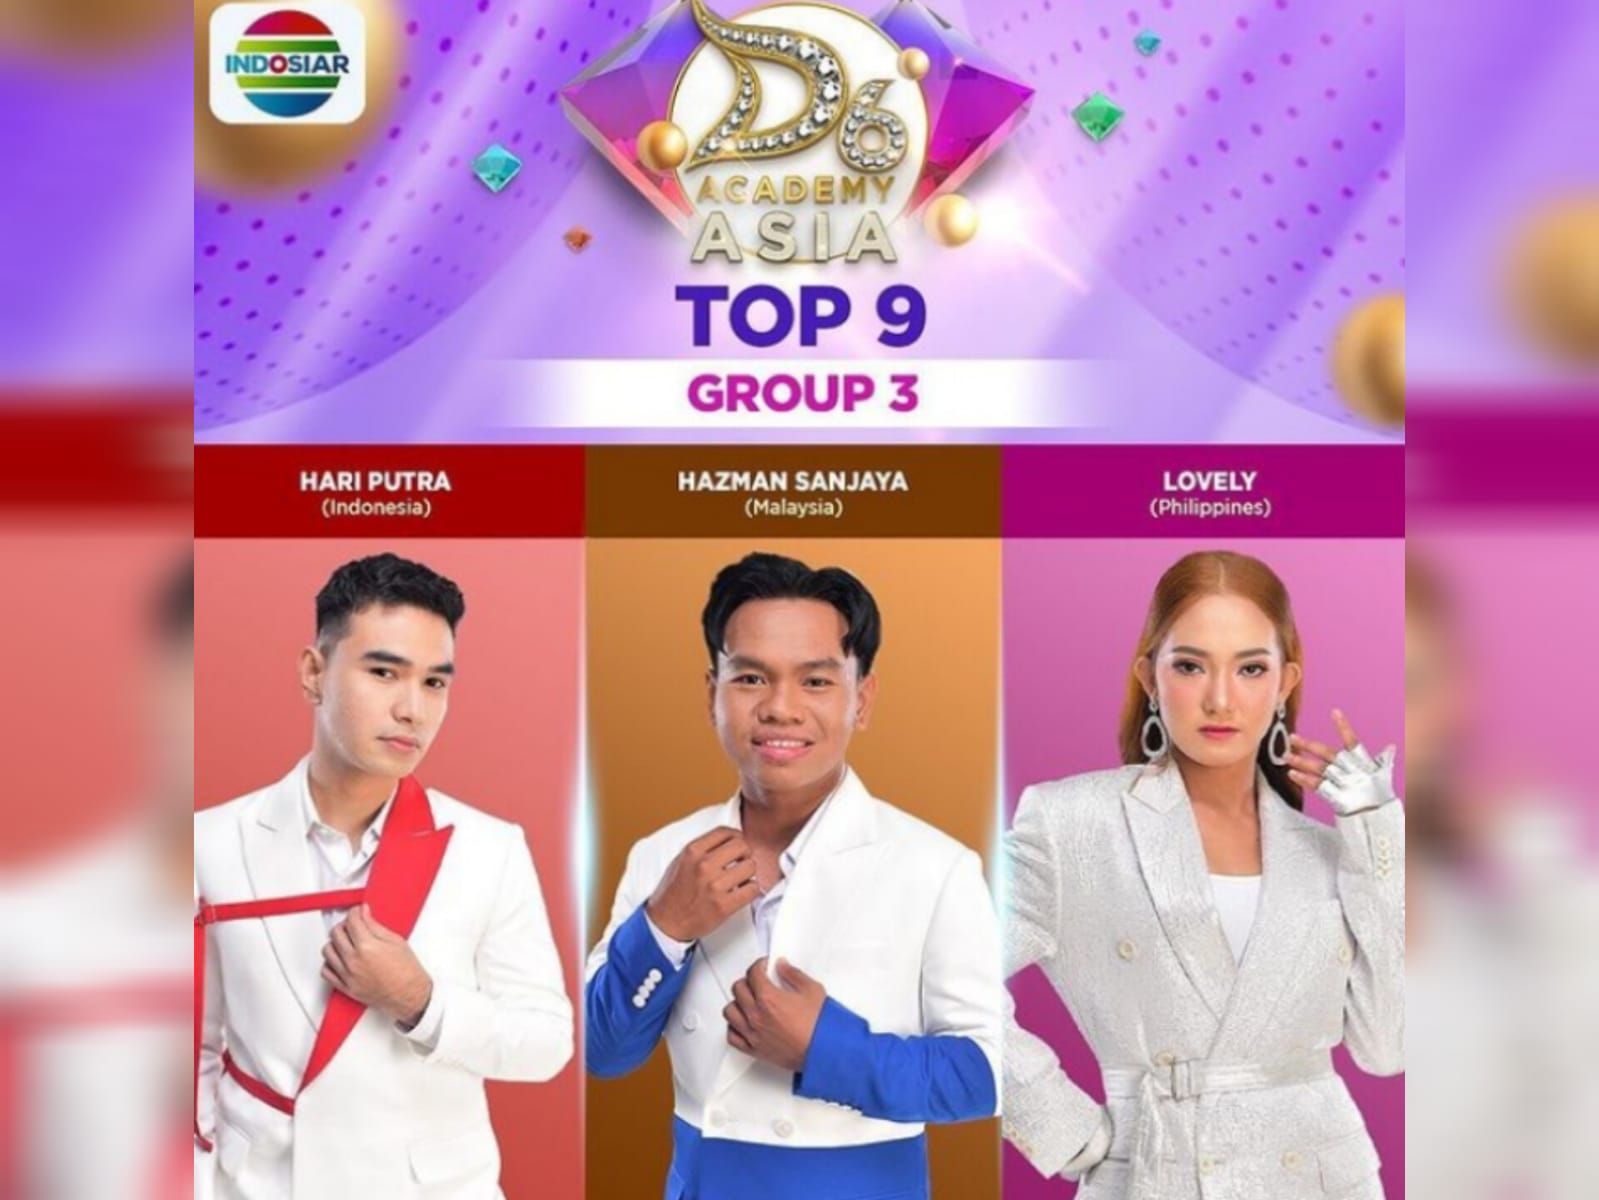 Jadwal acara Indosiar hari ini, Selasa 15 Agustus 2023, saksikan D'Academy Asia 6 Top 9 grup 3